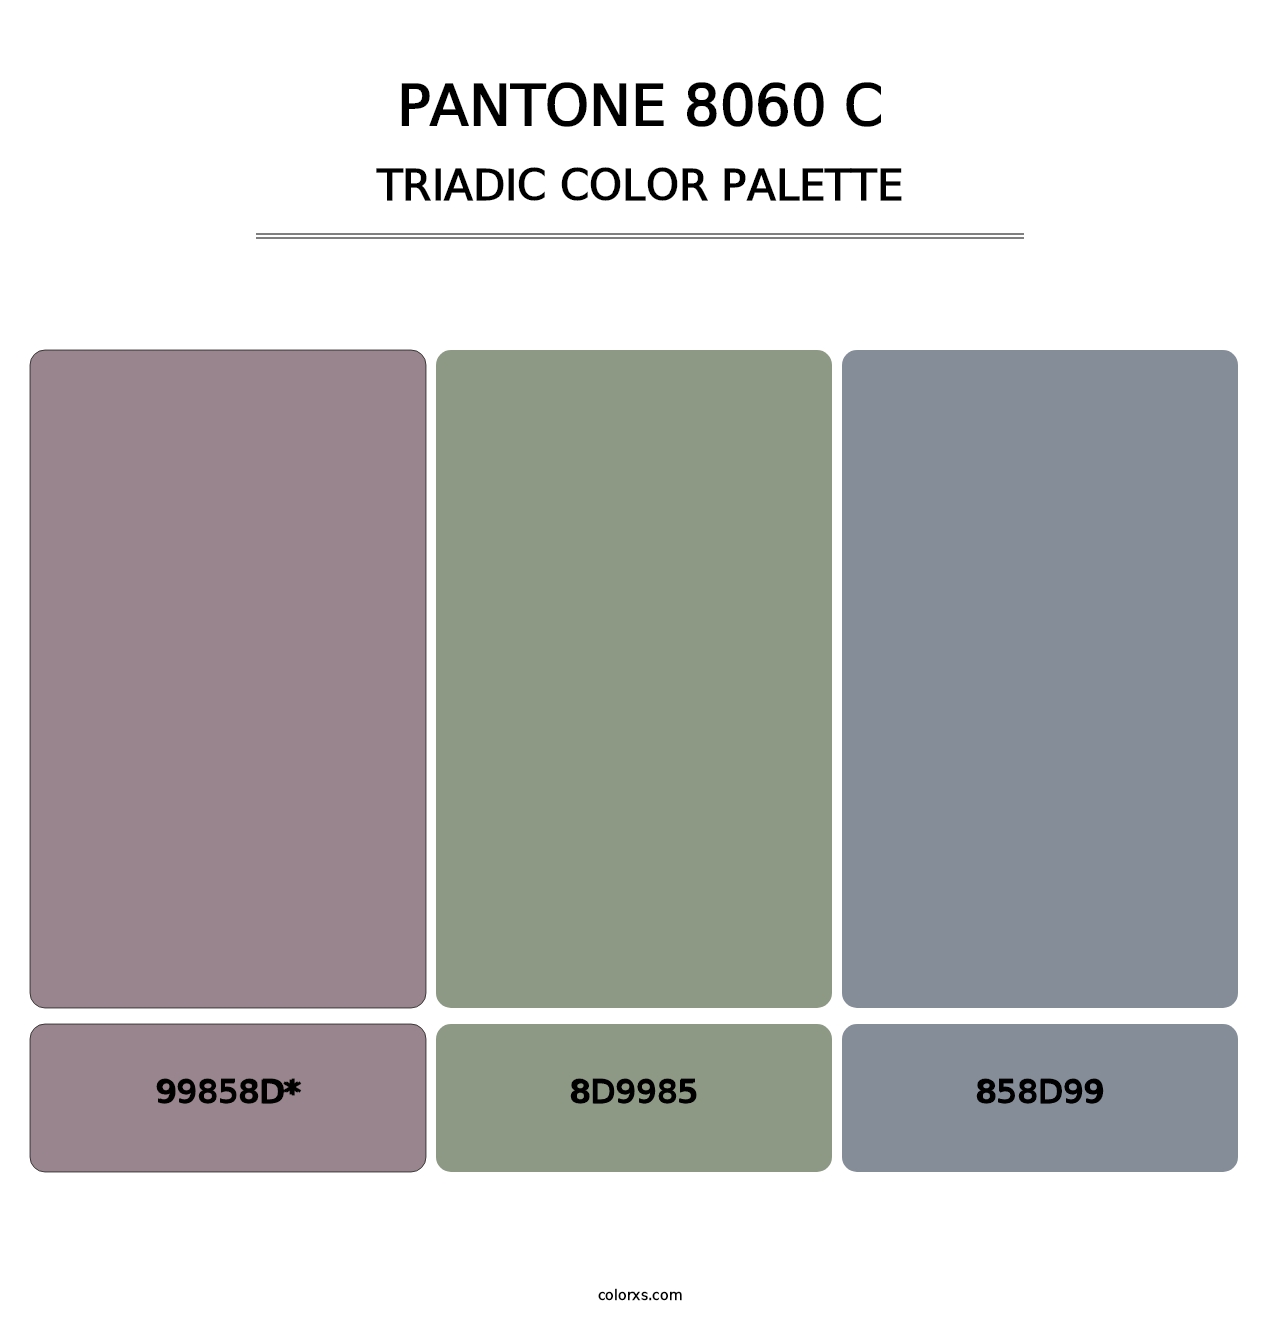 PANTONE 8060 C - Triadic Color Palette